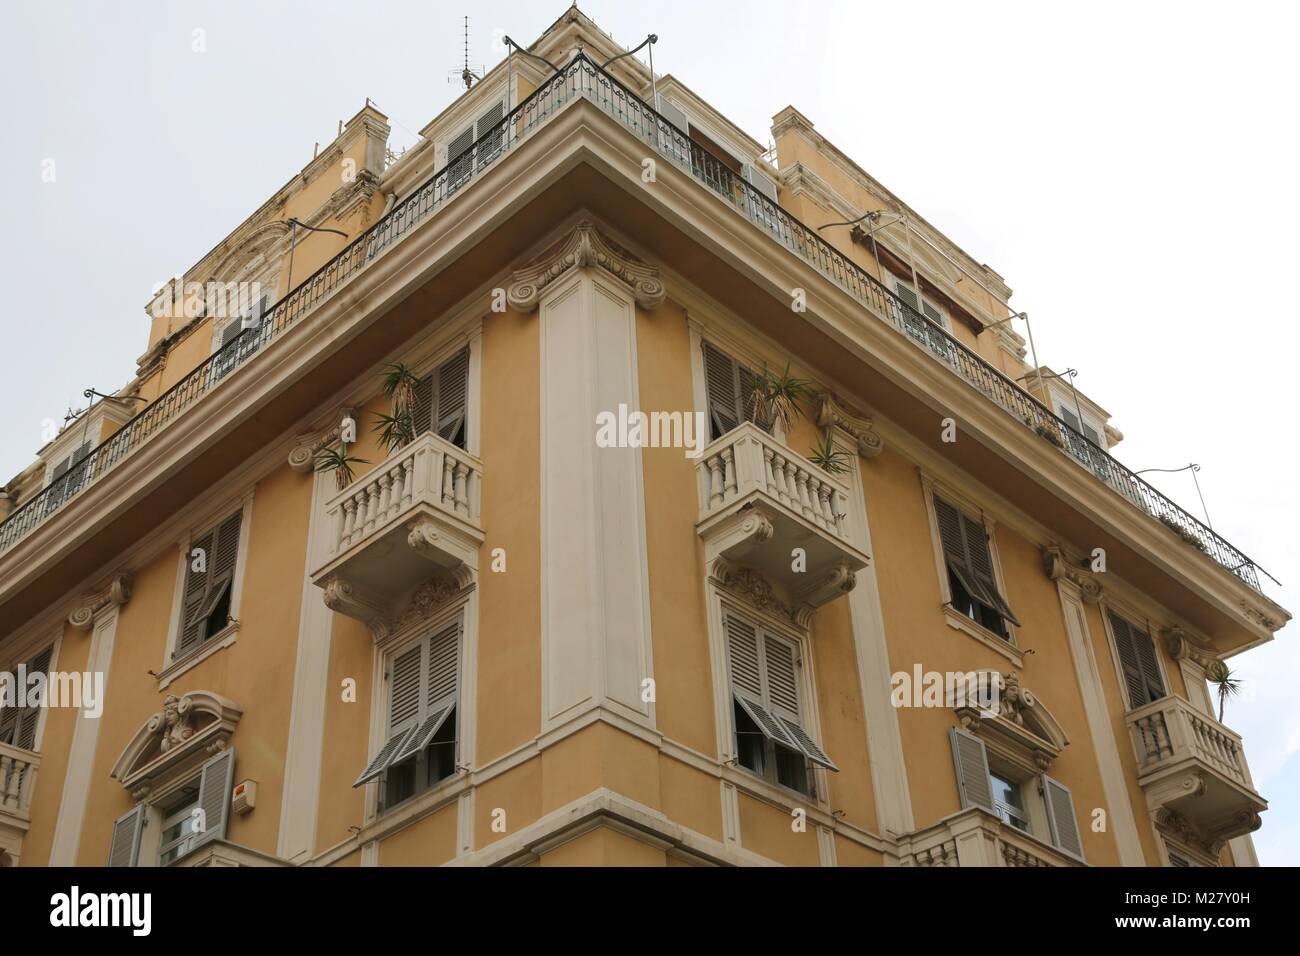 Buildings in Genova, Italy Stock Photo